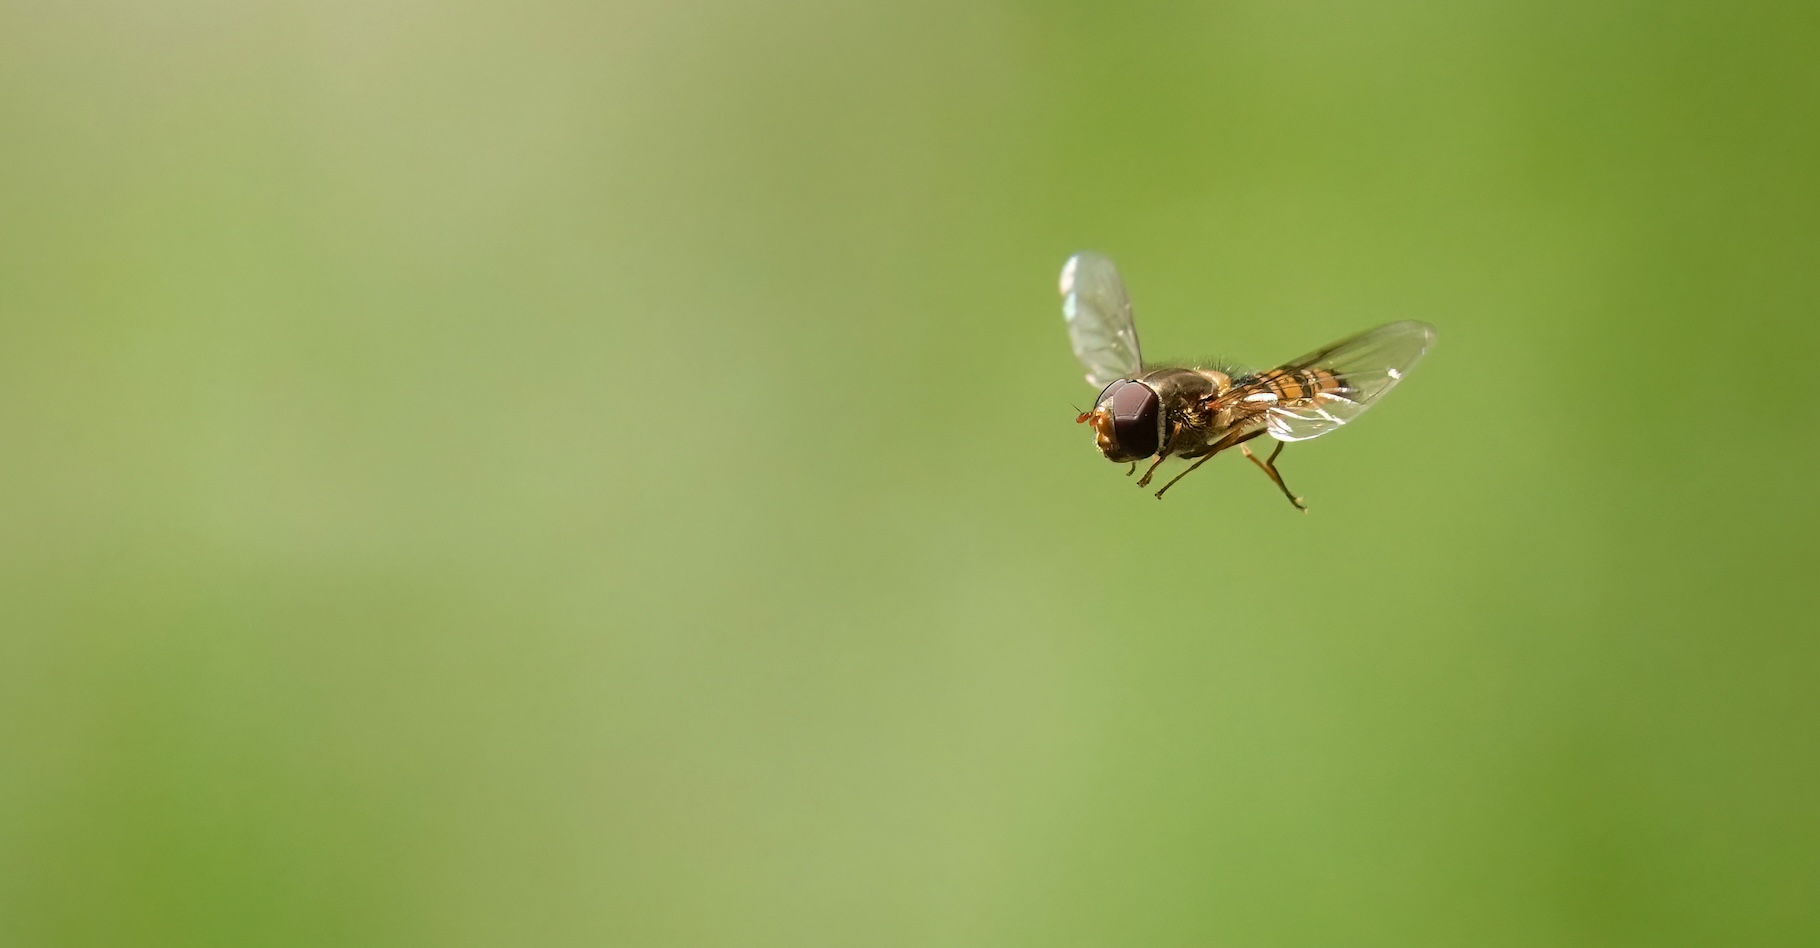 Des chercheurs de l’université d’Exeter (Royaume-Uni) ont observé la migration des insectes – parmi lesquels beaucoup de syrphes ceinturés comme celui représenté ici – par un col étroit des Pyrénées. © Nigel, Adobe Stock